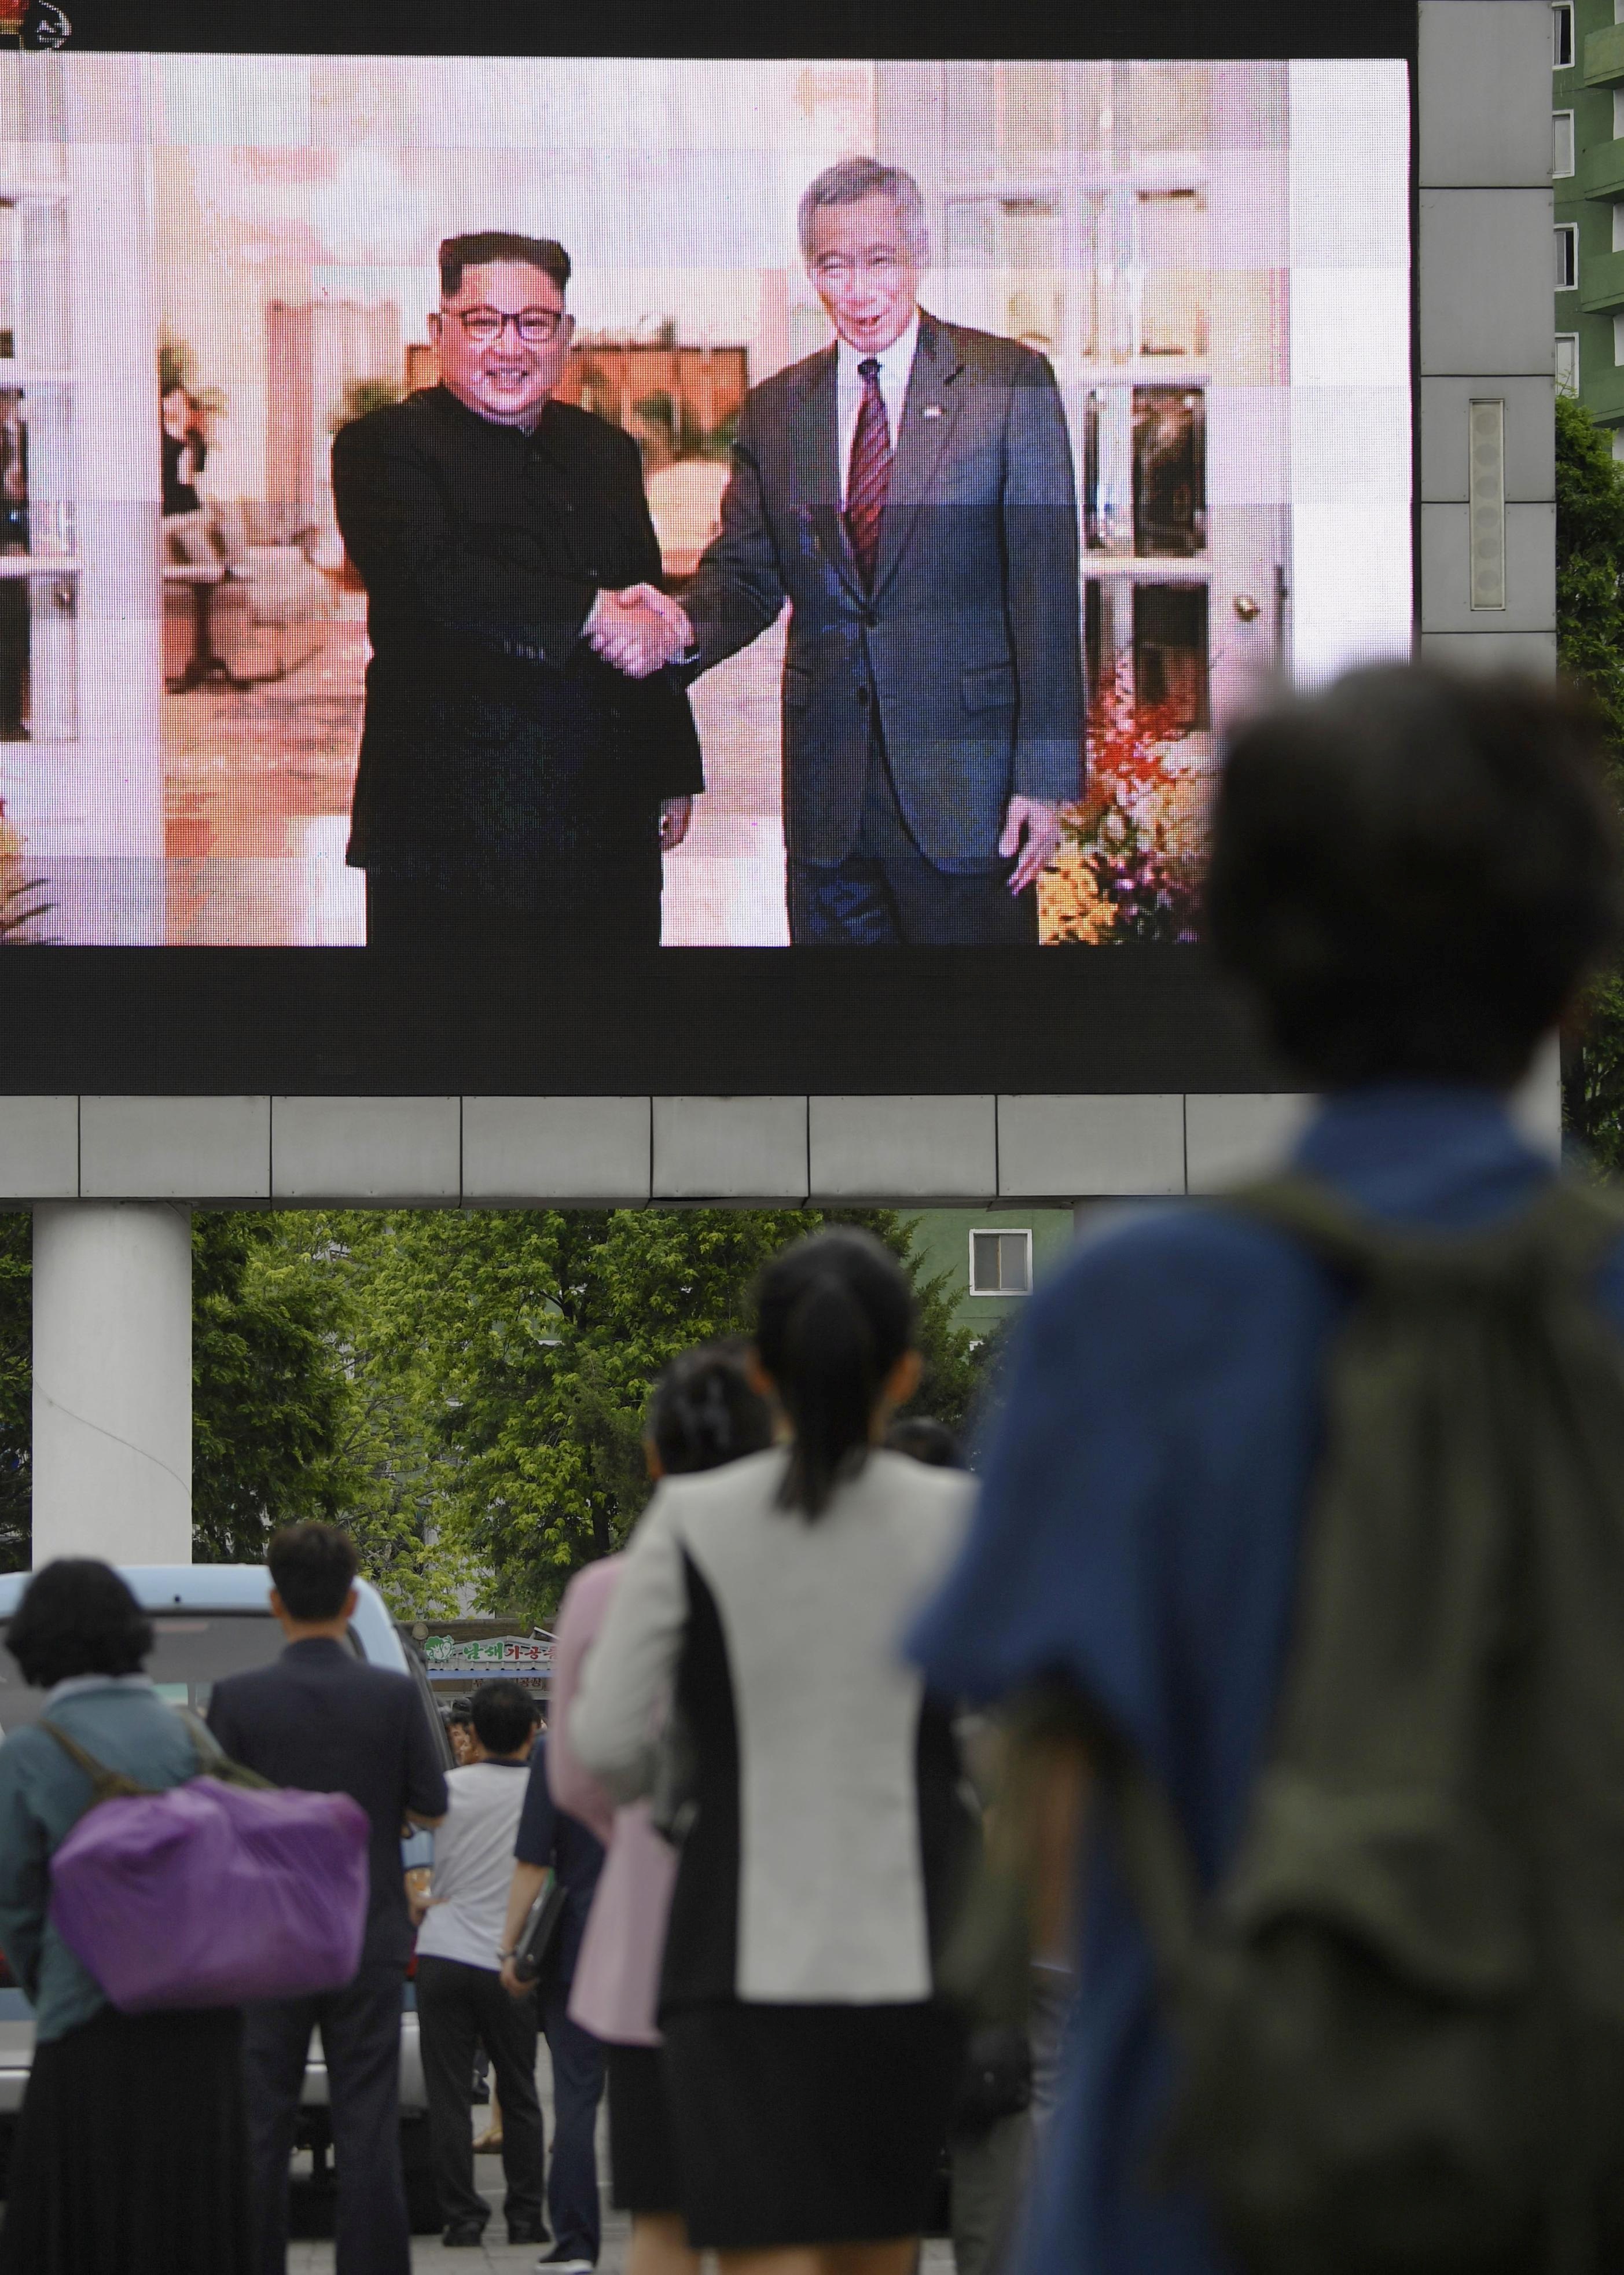 المواطنون يتابعون الشاشات أثناء لقاء زعيم كوريا الشمالية مع رئيس وزراء سنغافورة